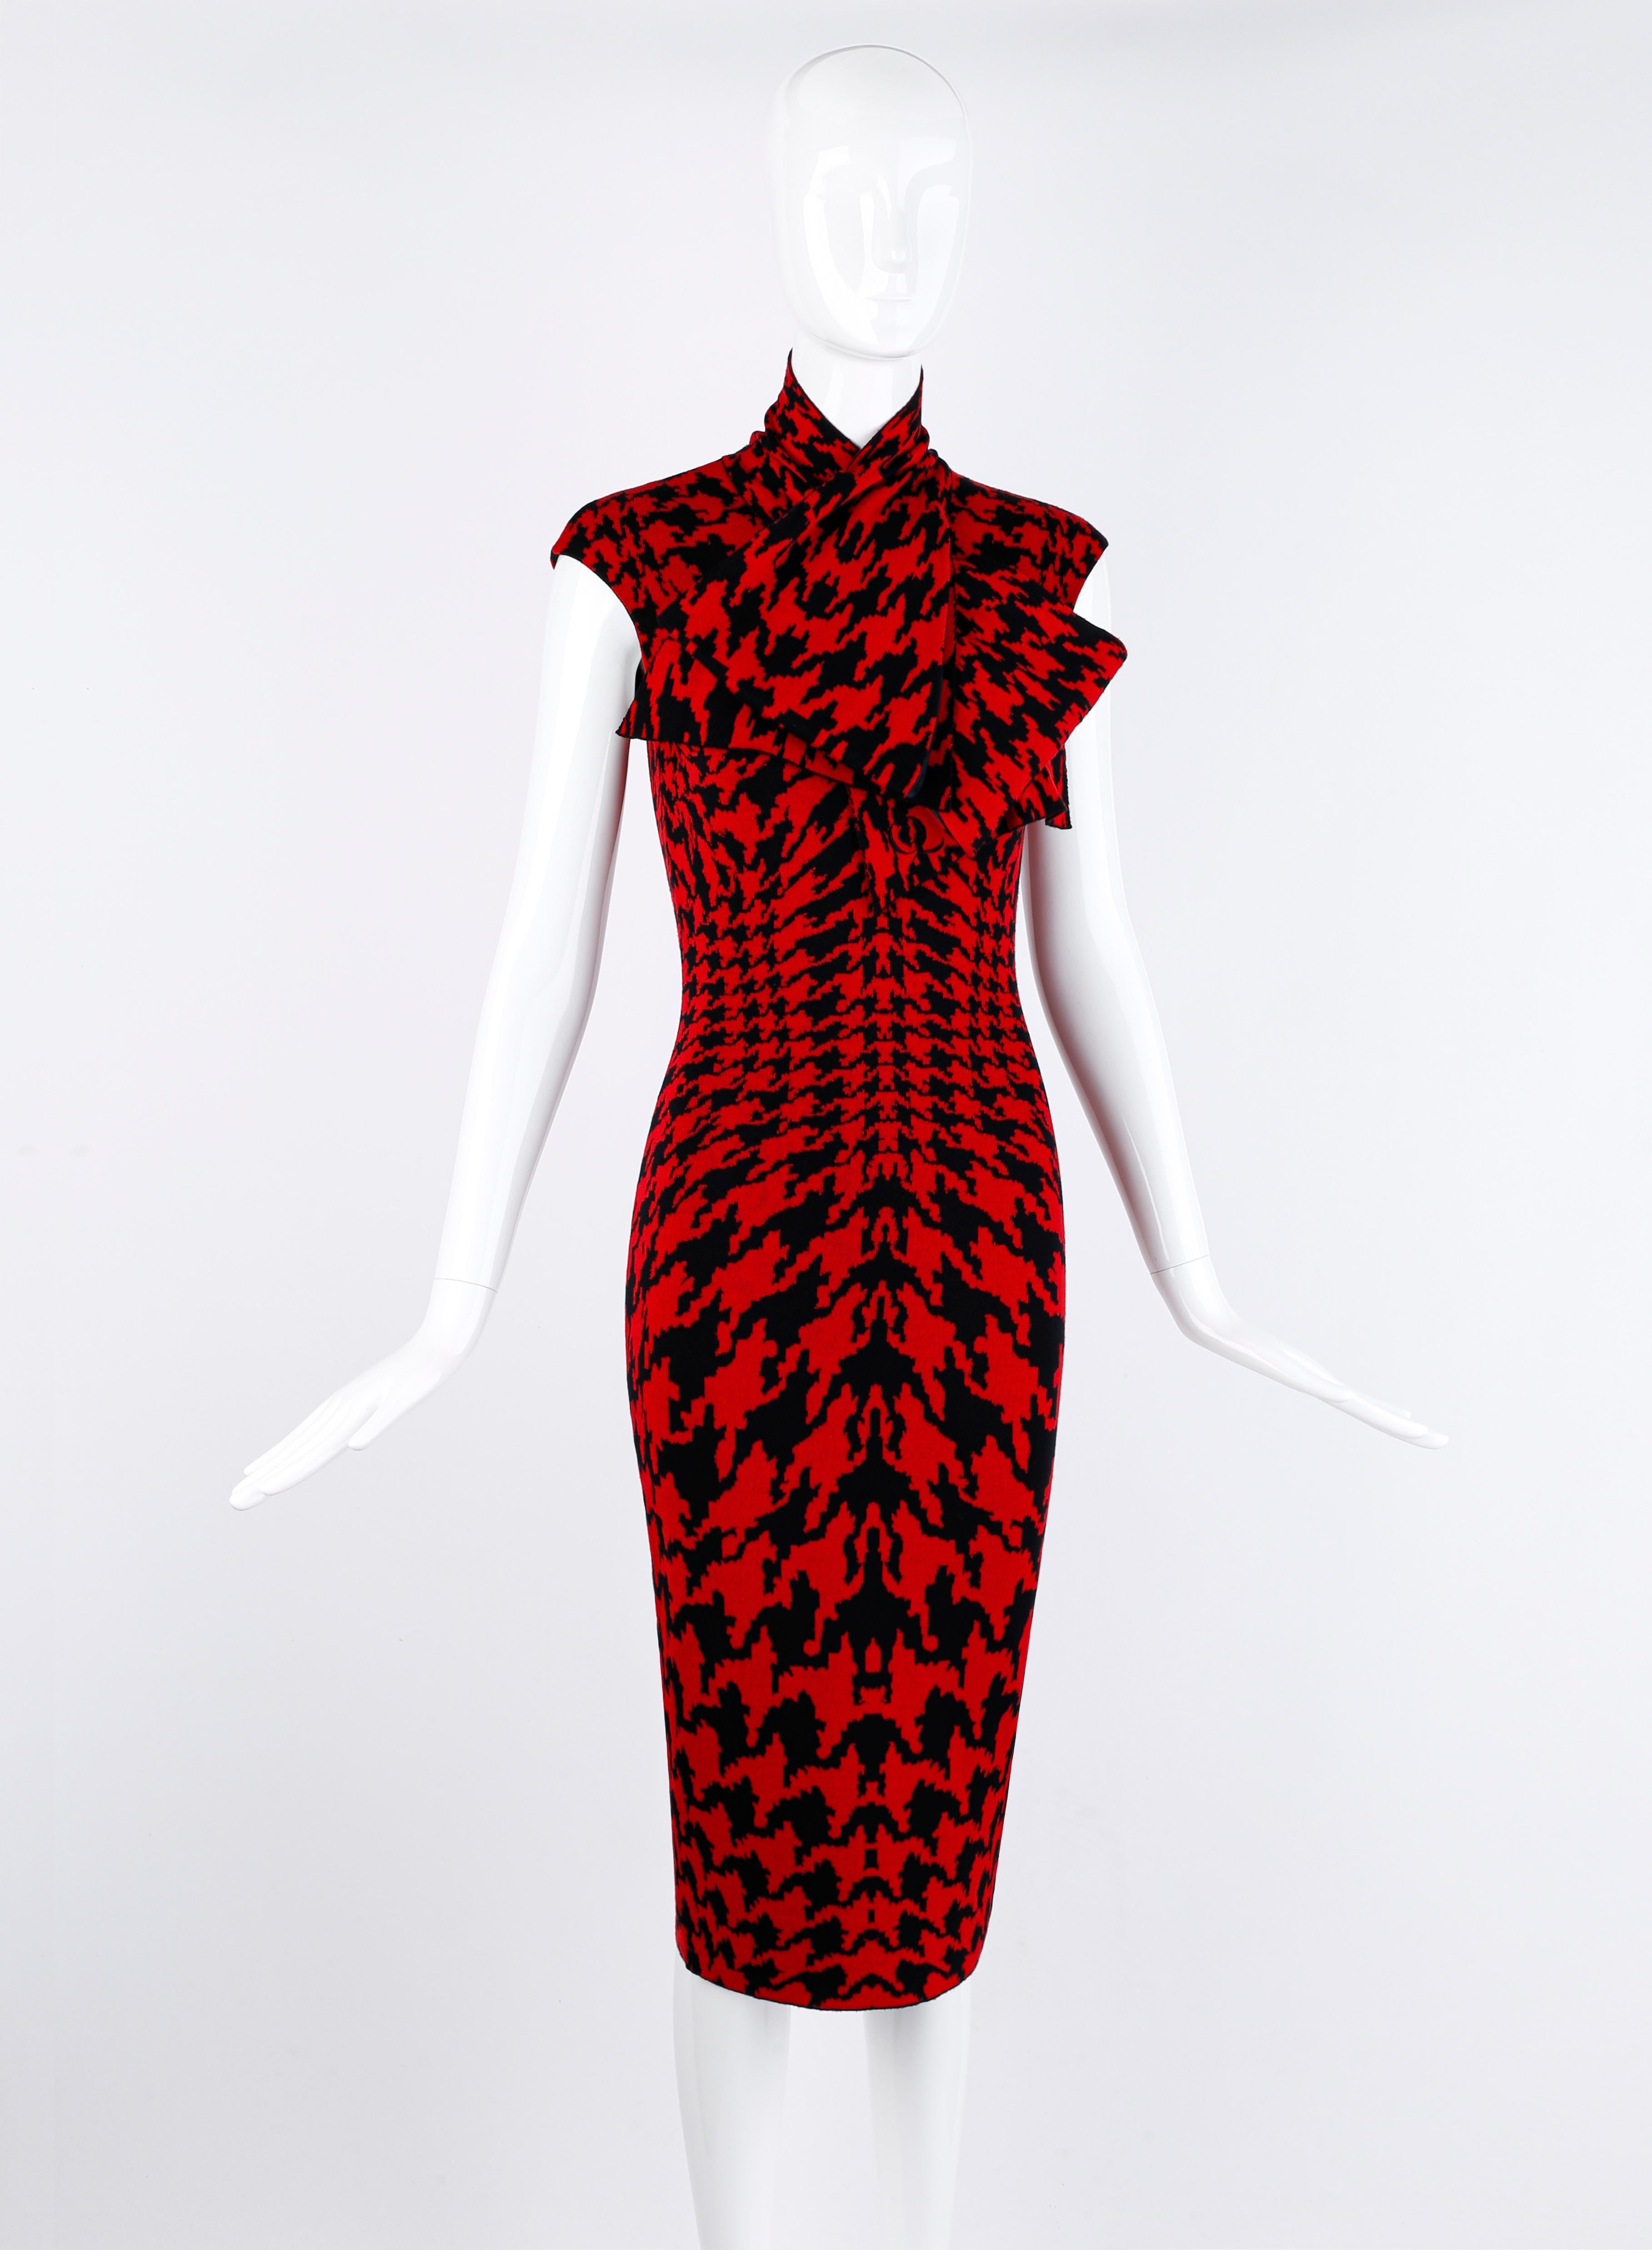 Conçu par Alexander McQueen pour la collection automne/hiver 2009. Motif pied-de-poule en tricot rouge et noir, dans des tailles variées pour accentuer la silhouette. Sans manches, ajusté. Le matériau est un peu extensible. Noeud surdimensionné à